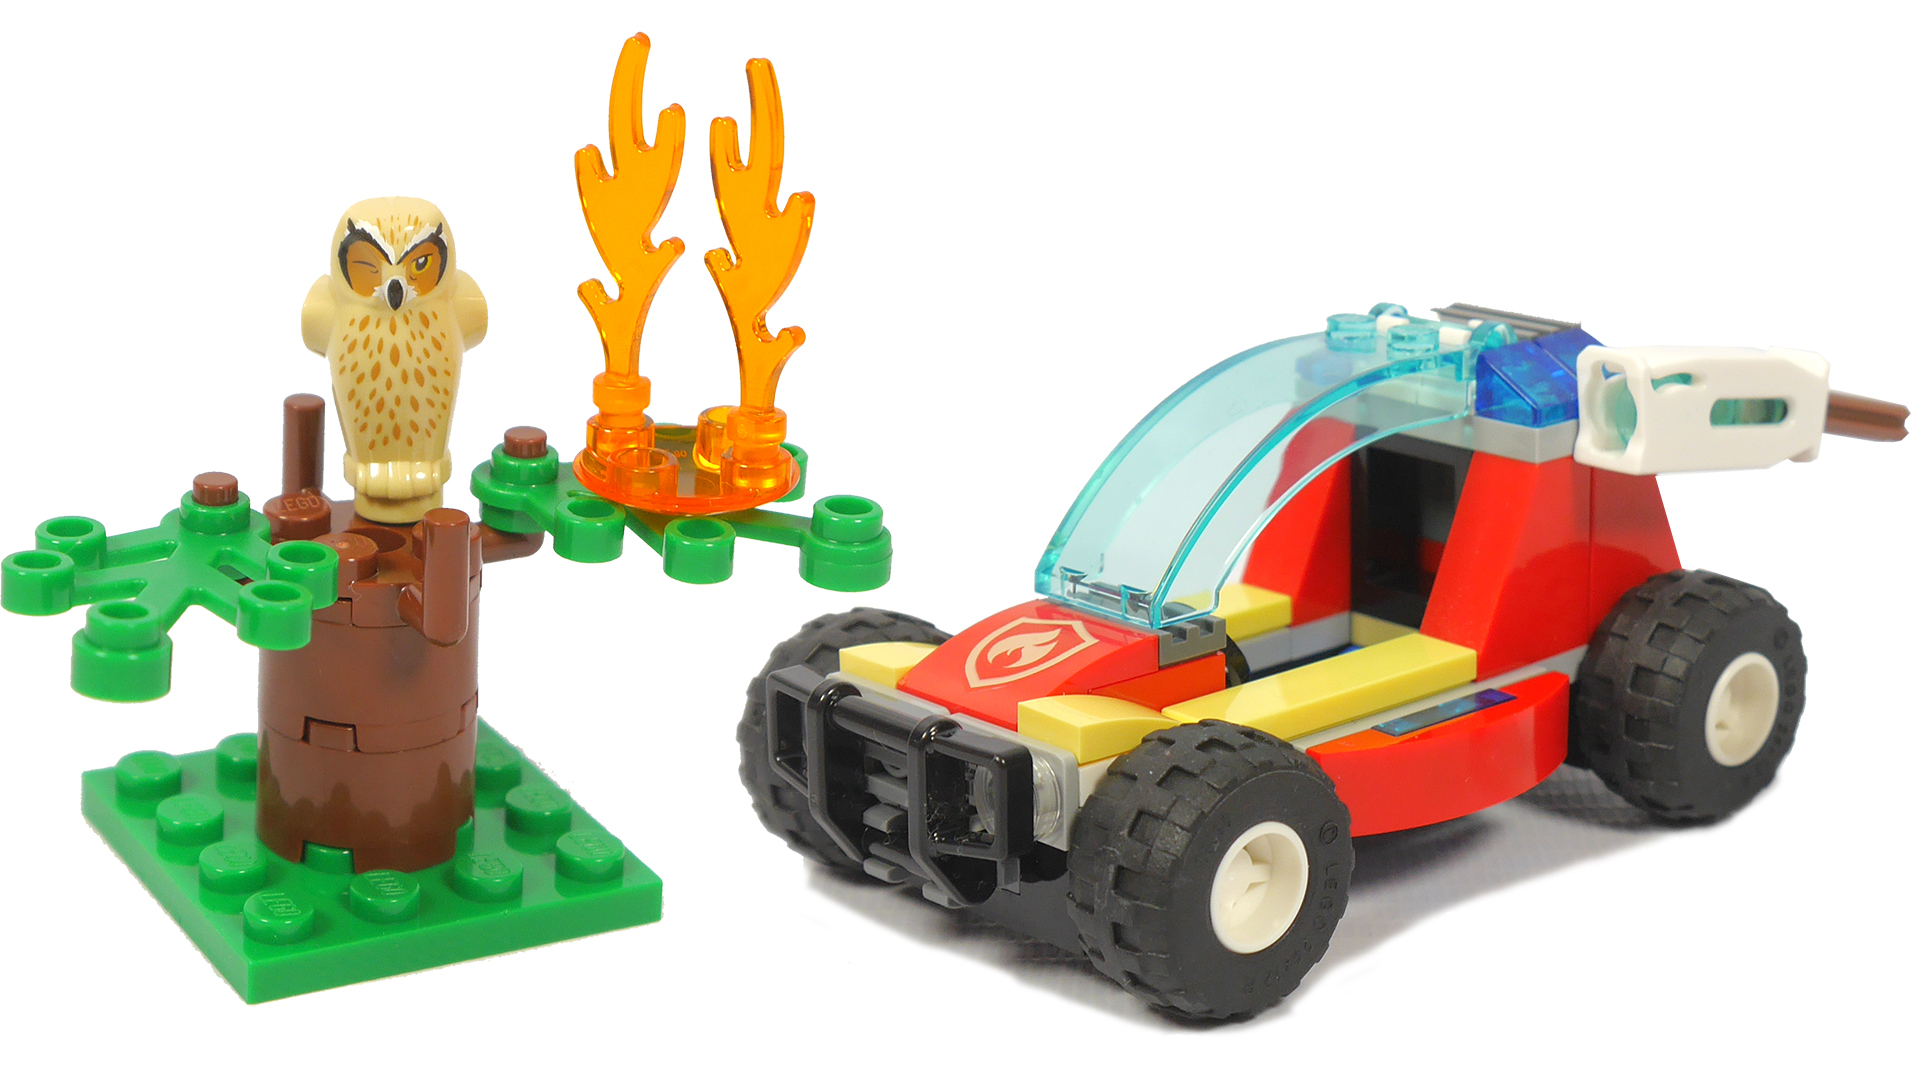 Lego City 60247 Лесные пожарные | Обзор и сборка конструктора Лего